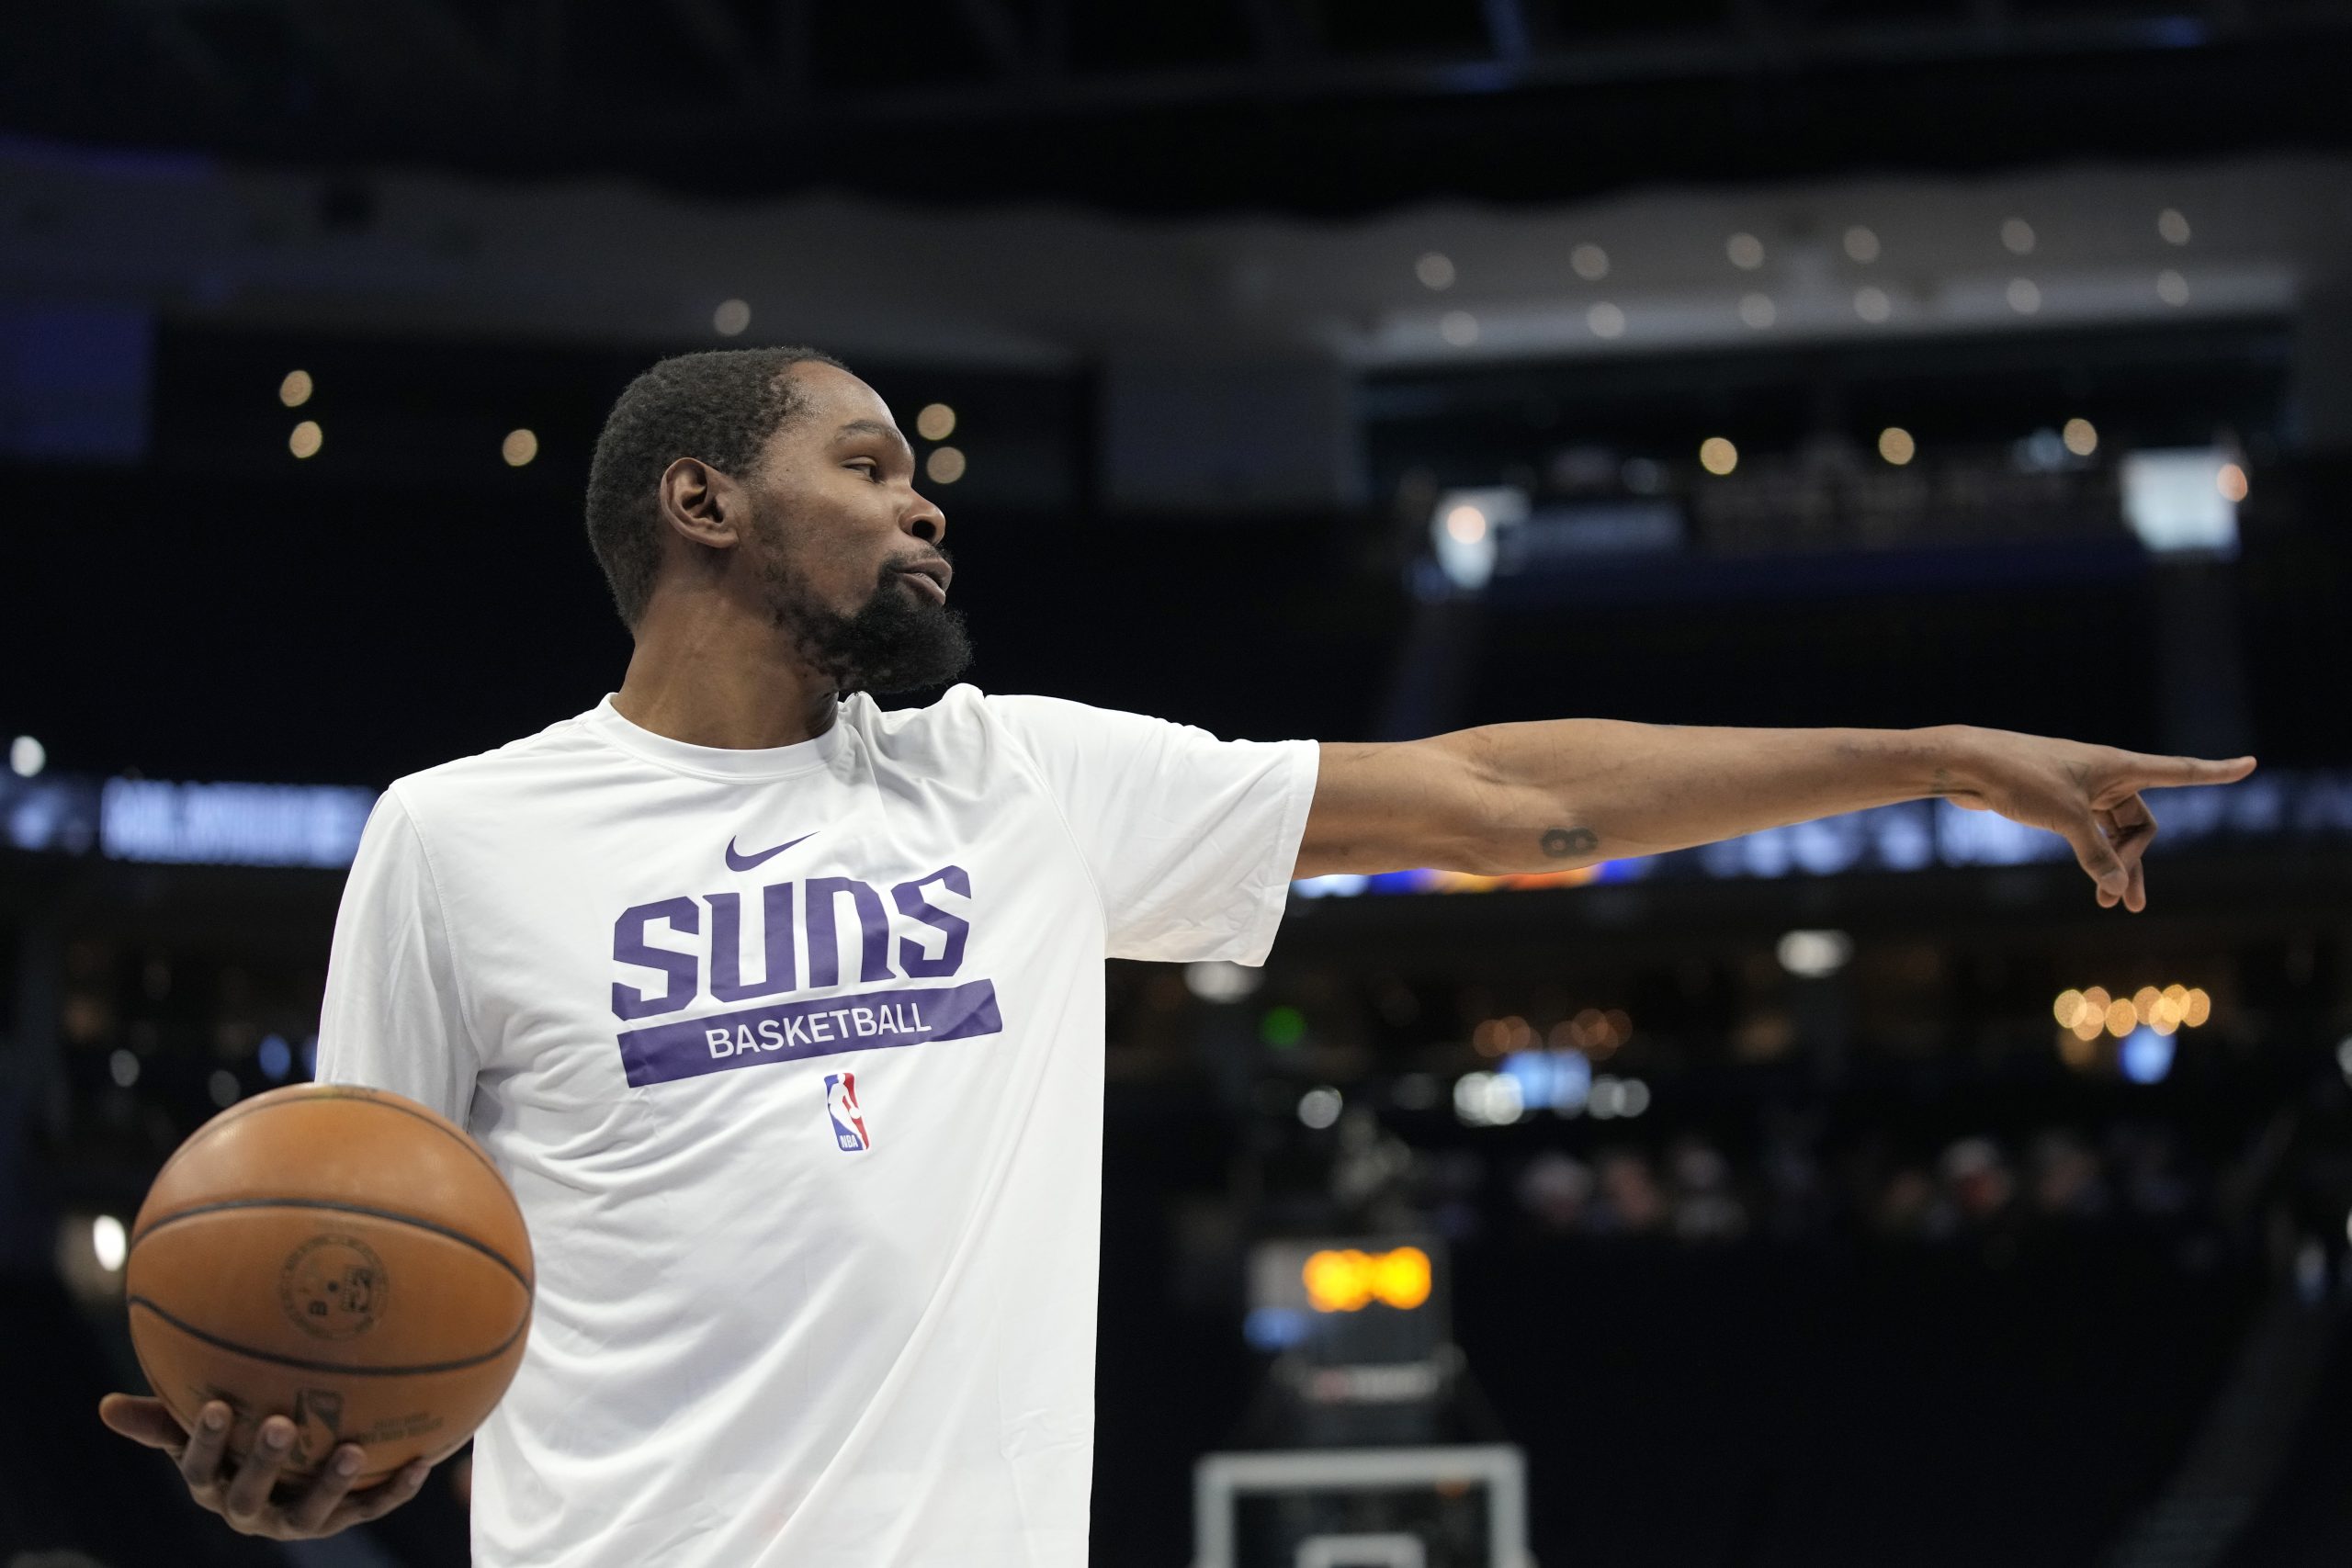 Udany debiut Duranta w Suns, ważna wygrana Lakers bez LeBrona i AD, derby znów dla Knicks